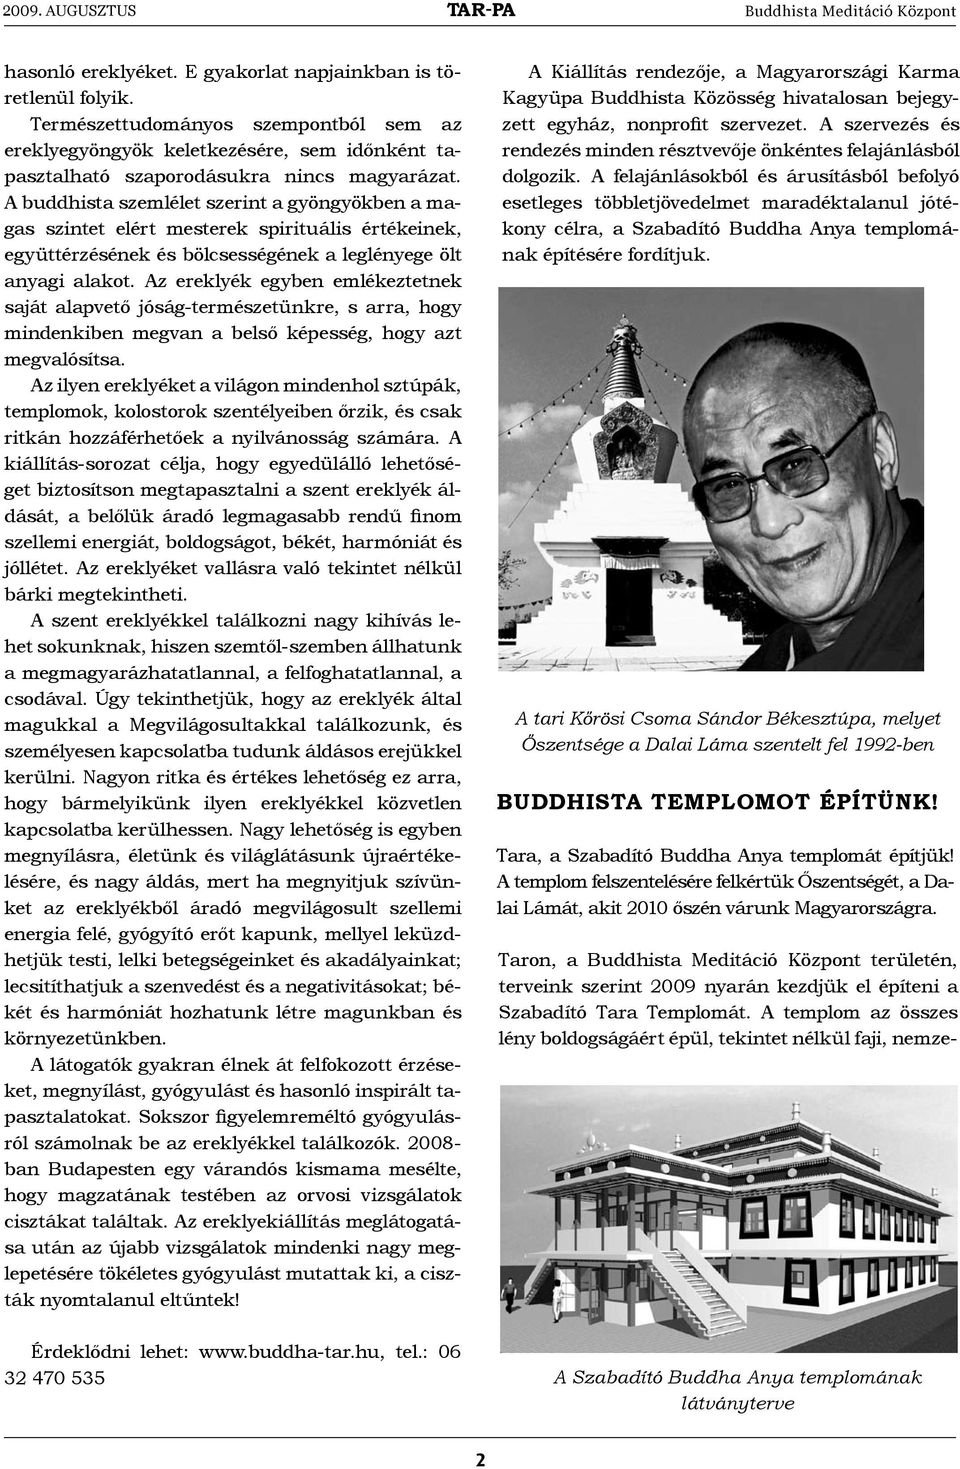 TAR-PA. Buddhista Meditáció Központ M E G S Z A B A D U L Á S  SZEMTŐL-SZEMBEN A CSODÁVAL GYÓGYÍTÓ BUDDHA EREKLYÉK NEMZETKÖZI KIÁLLÍTÁS ÉS  FESZTIVÁL - PDF Ingyenes letöltés